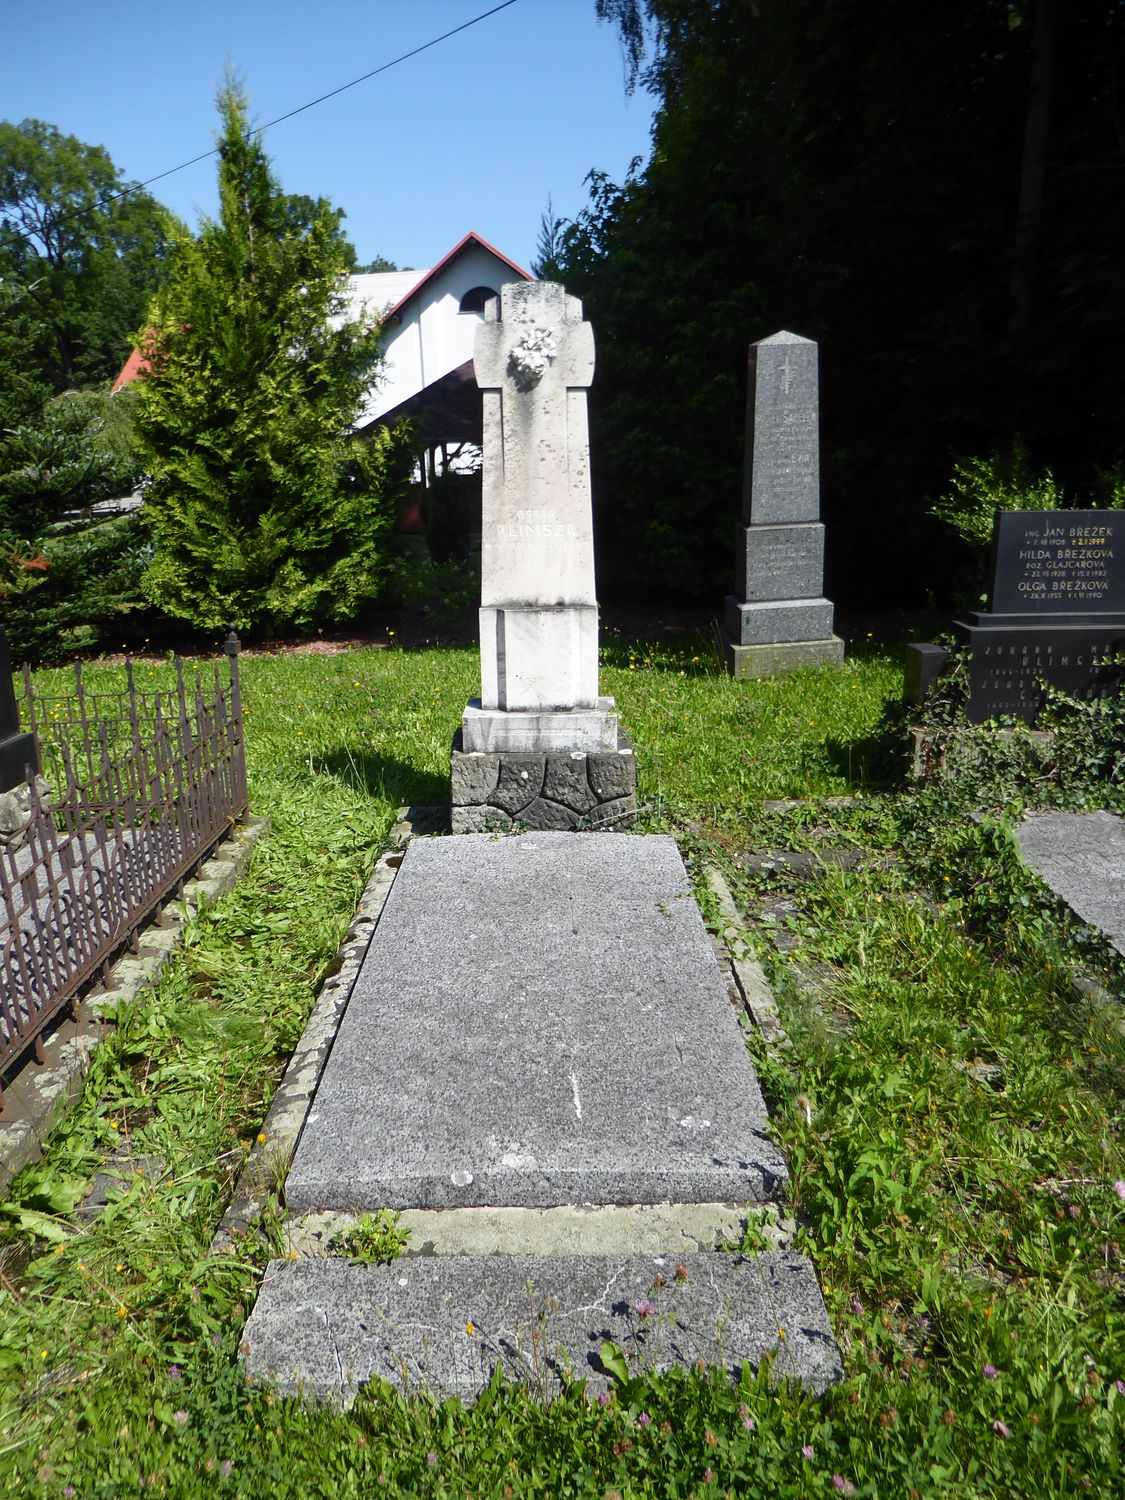 Tombstone of Oskar Klimsz from the cemetery of the Czech part of Těšín Silesia, as of 2022.